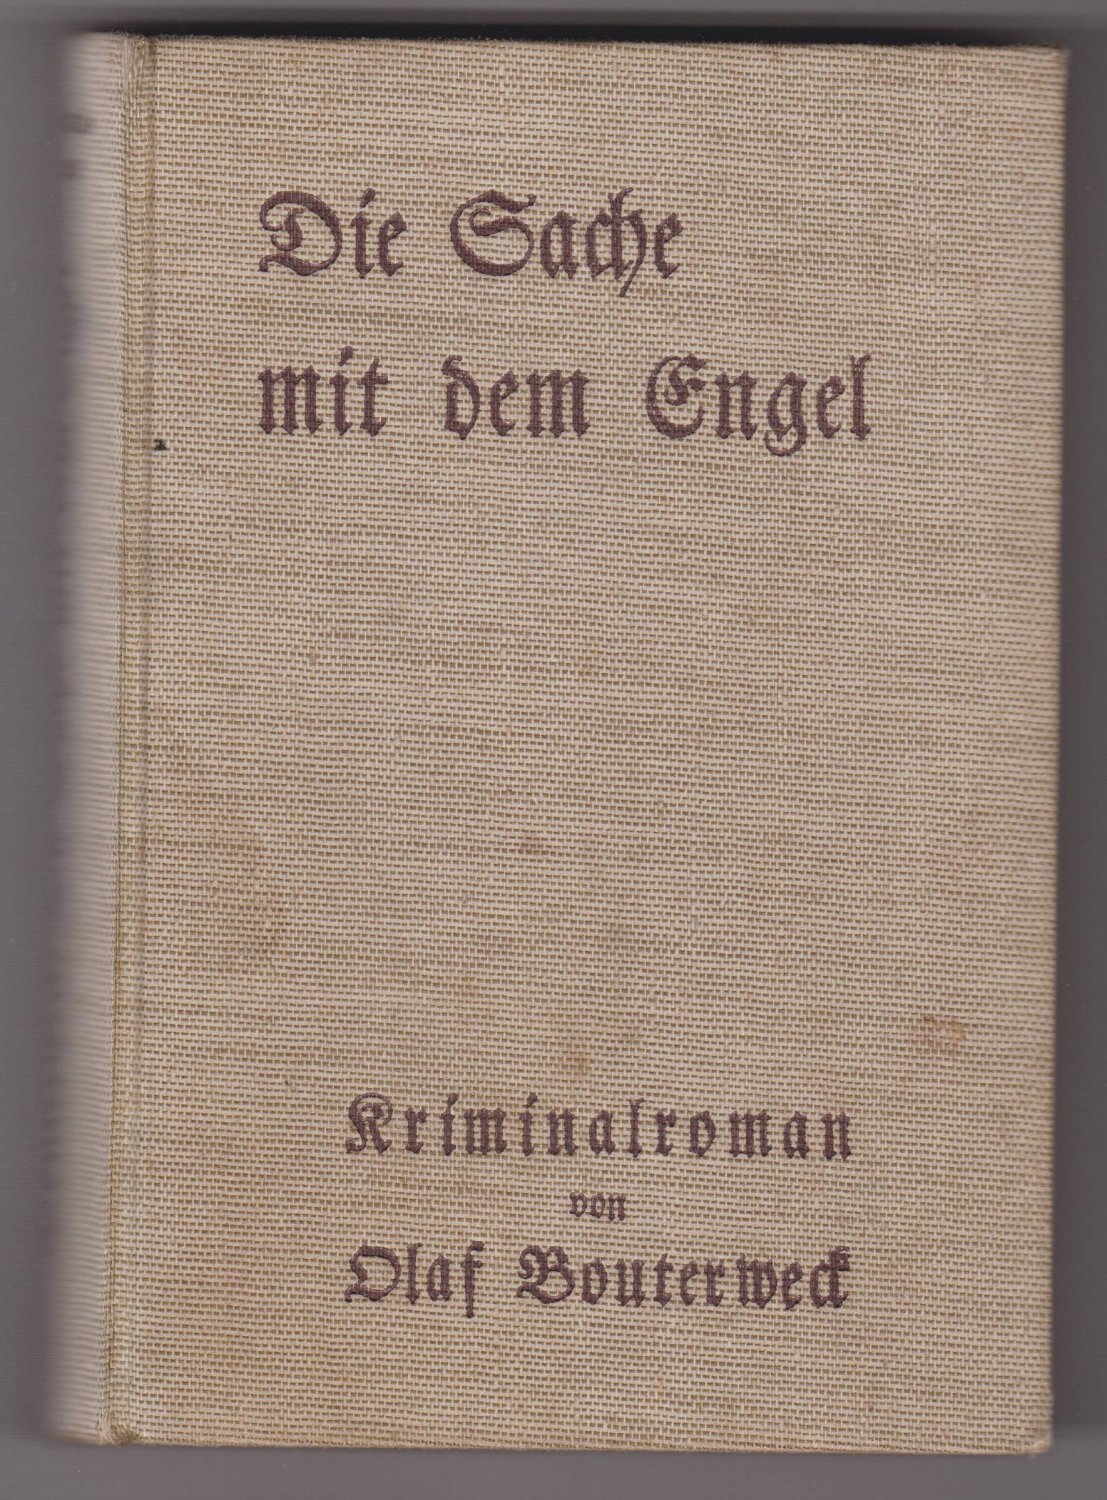 BOUTERWECK, Olaf:  Die Sache mit dem Engel. Kriminalroman. 